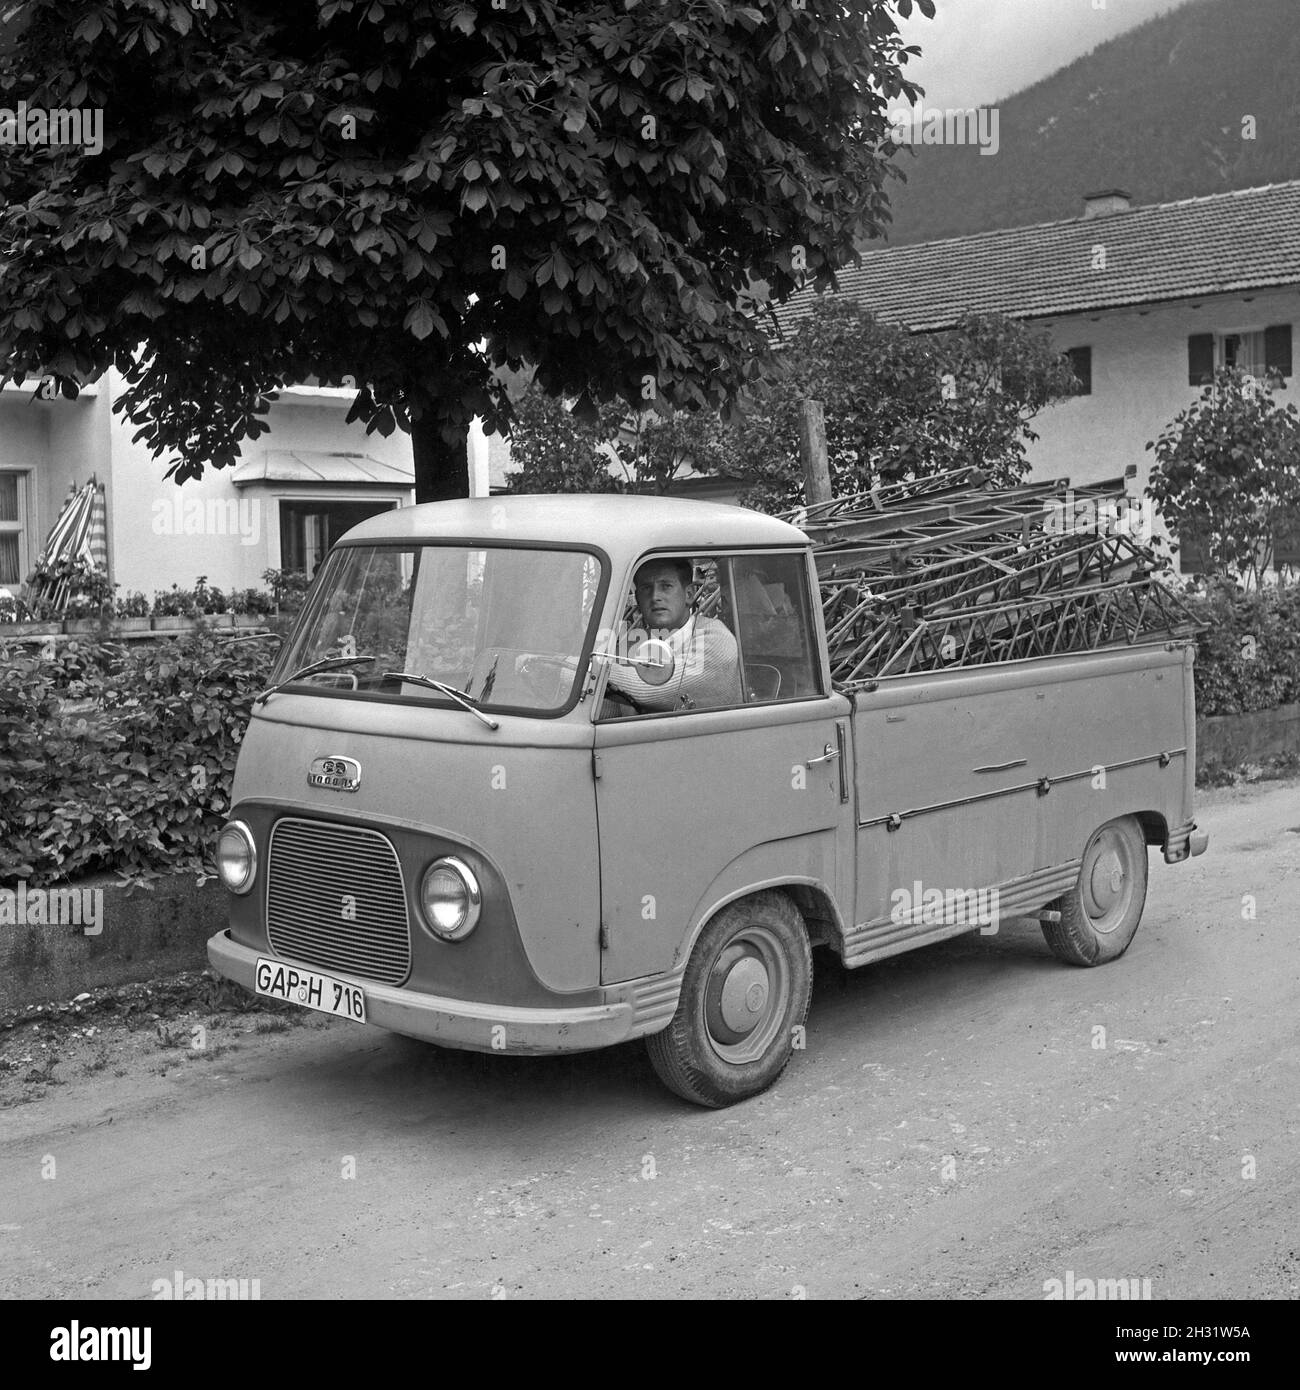 Mann mit Pritschenwagen auf der Baustelle eines Hauss BEI Mittenwald, Deutschland 1959.Homme avec ramassage pour construire une maison près de Mittenwald, Allemagne 1959. Banque D'Images